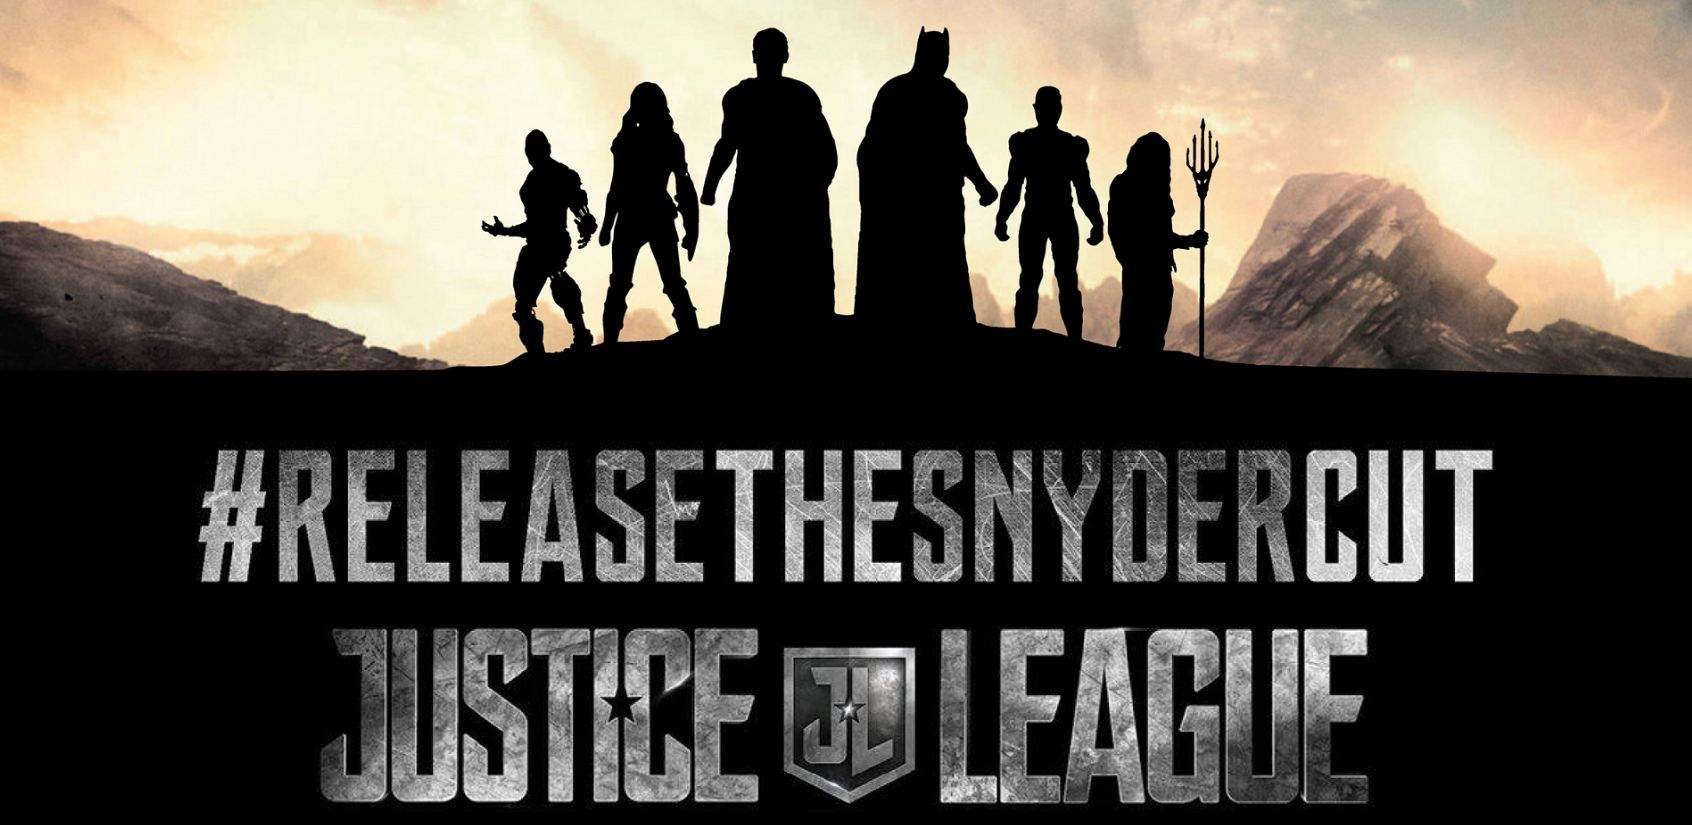 Justice League'in tam 4 saat uzunluğunda Zach Snyder versiyonu yayınlanacak